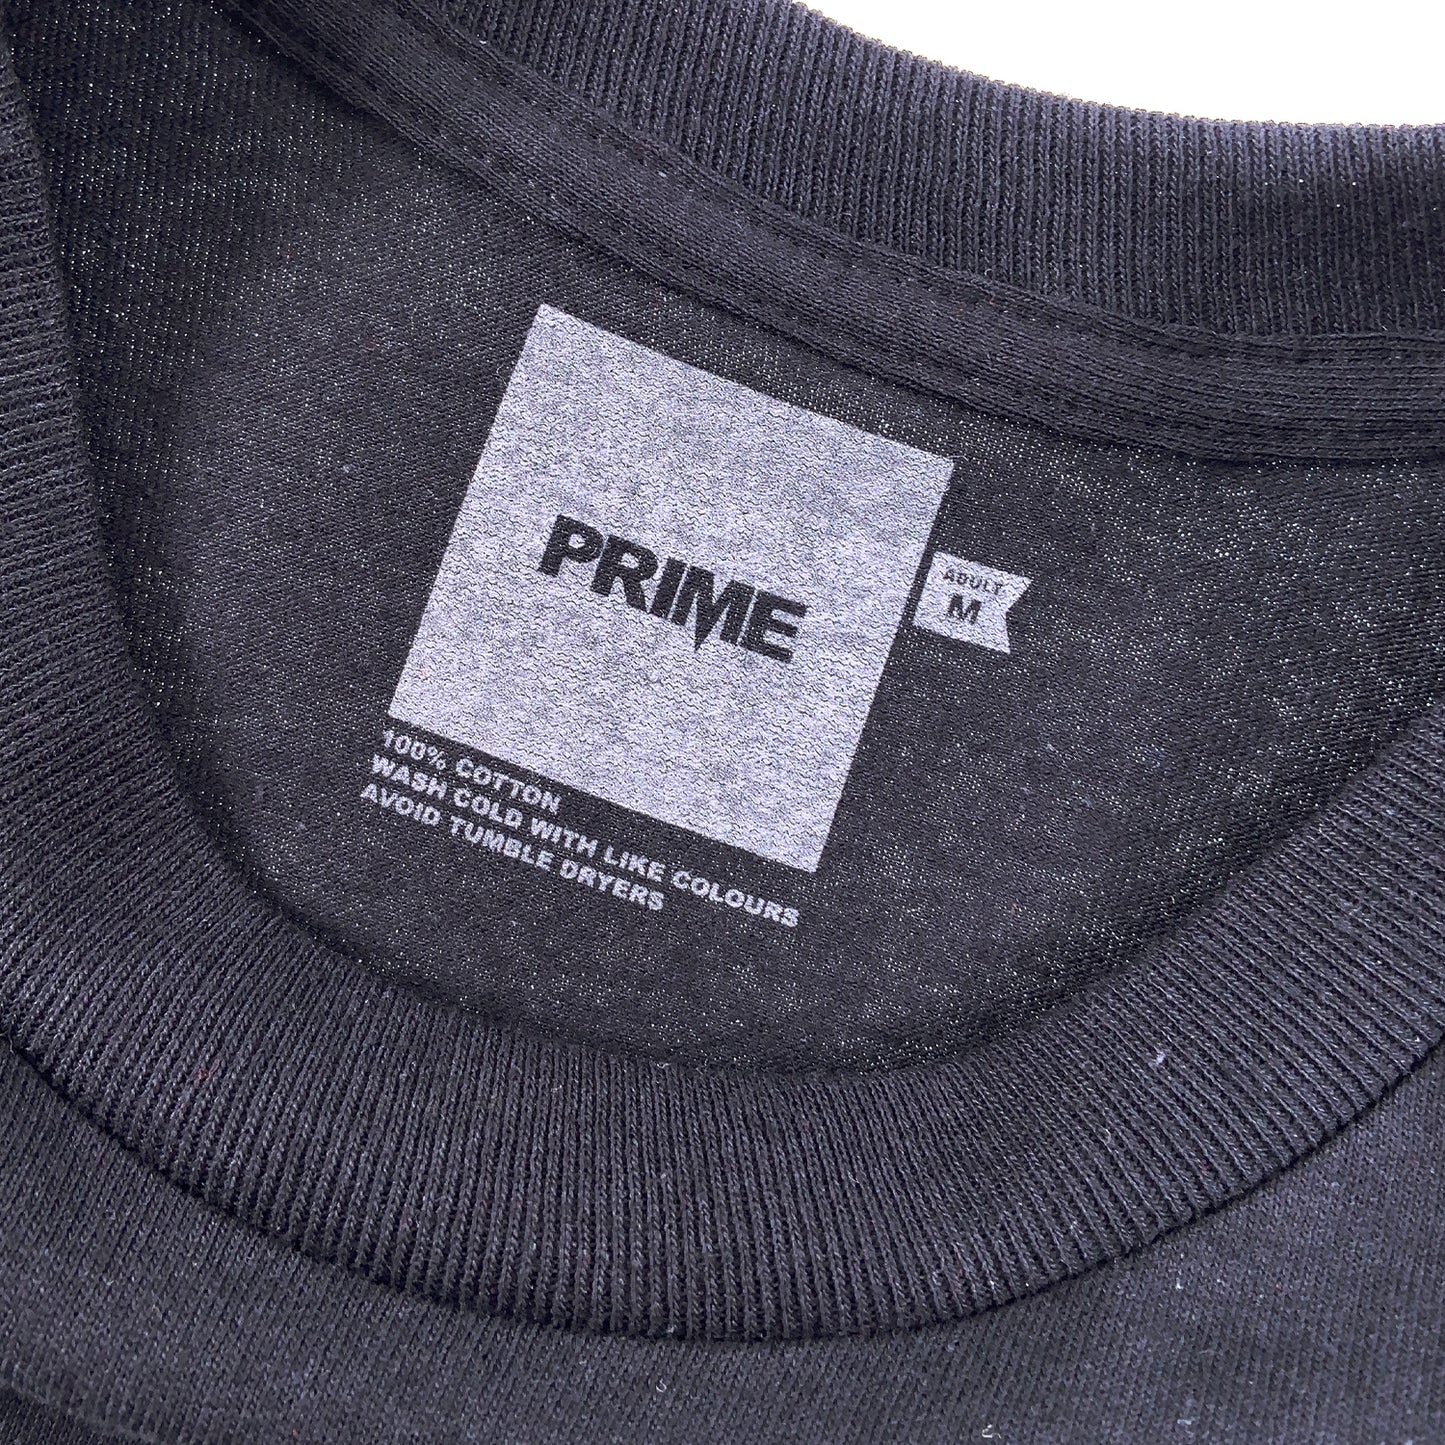 PRIME DELUX OG PREMIUM LONG SLEEVE T-SHIRT - BLACK / WHITE - Prime Delux Store